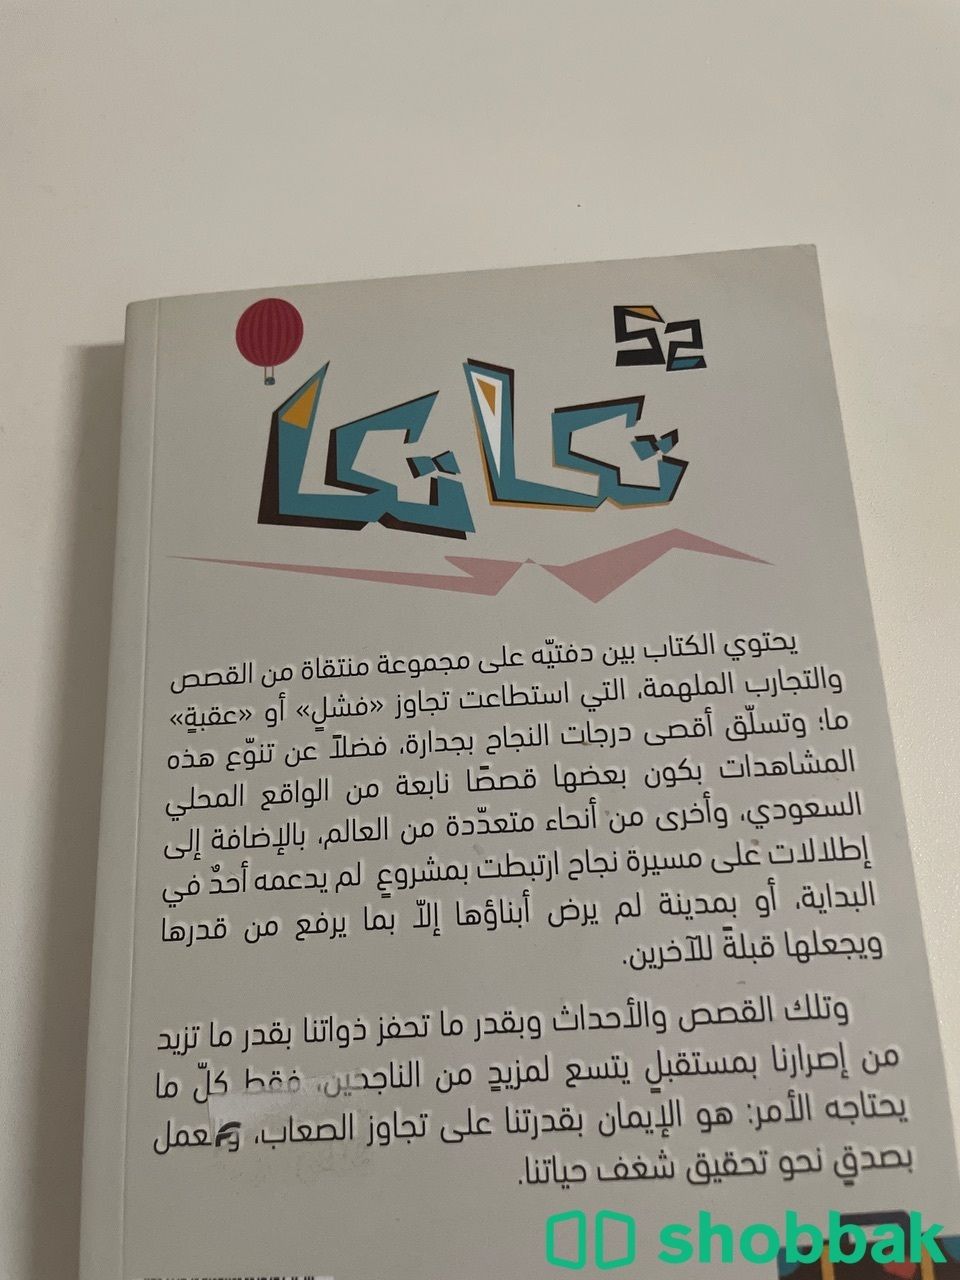 كتاب تكاتكا لعبدالرحمن السلطان  Shobbak Saudi Arabia